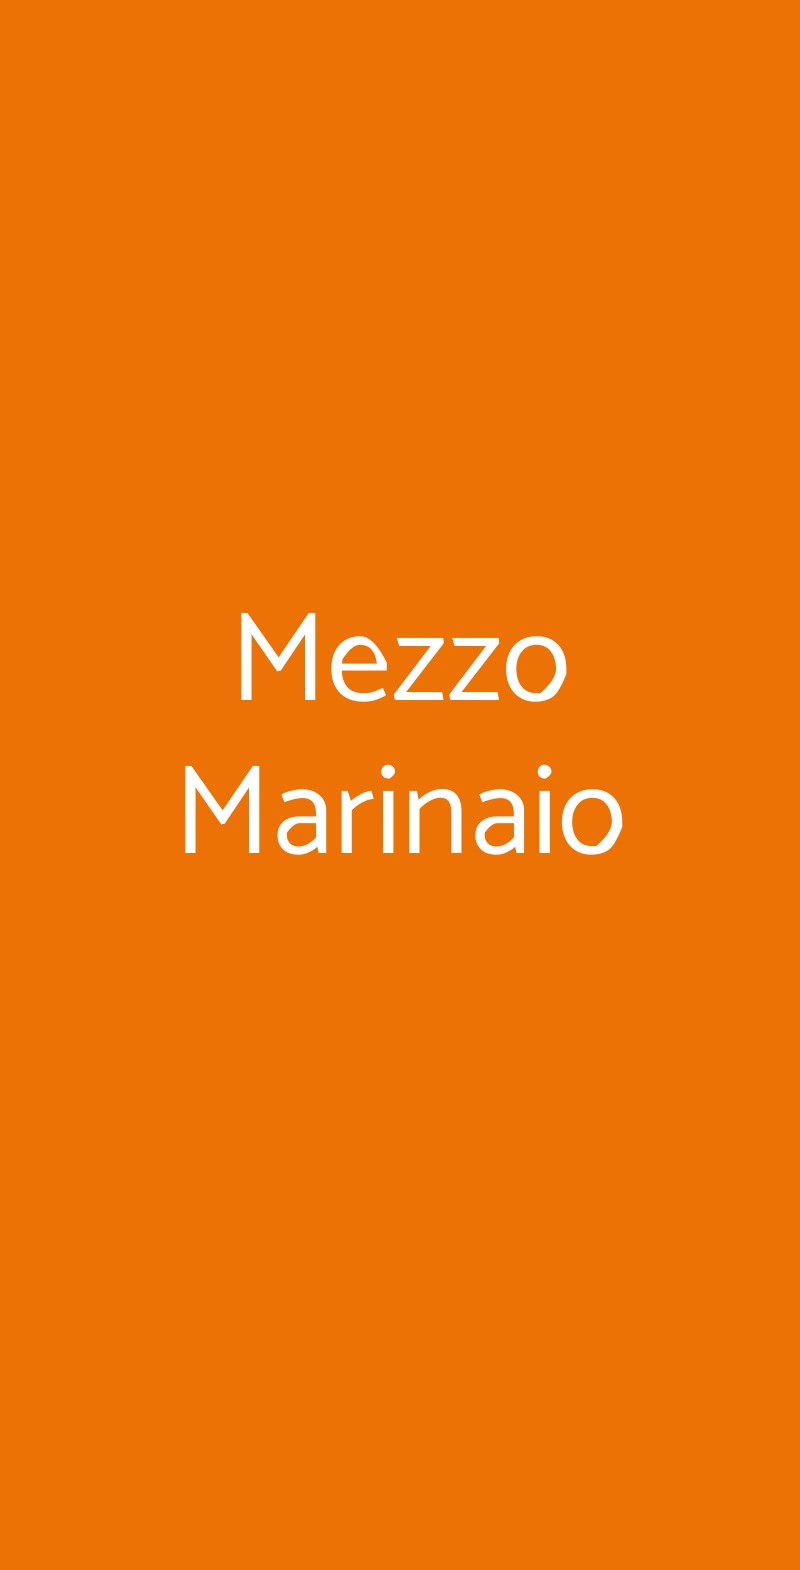 Mezzo Marinaio Viareggio menù 1 pagina